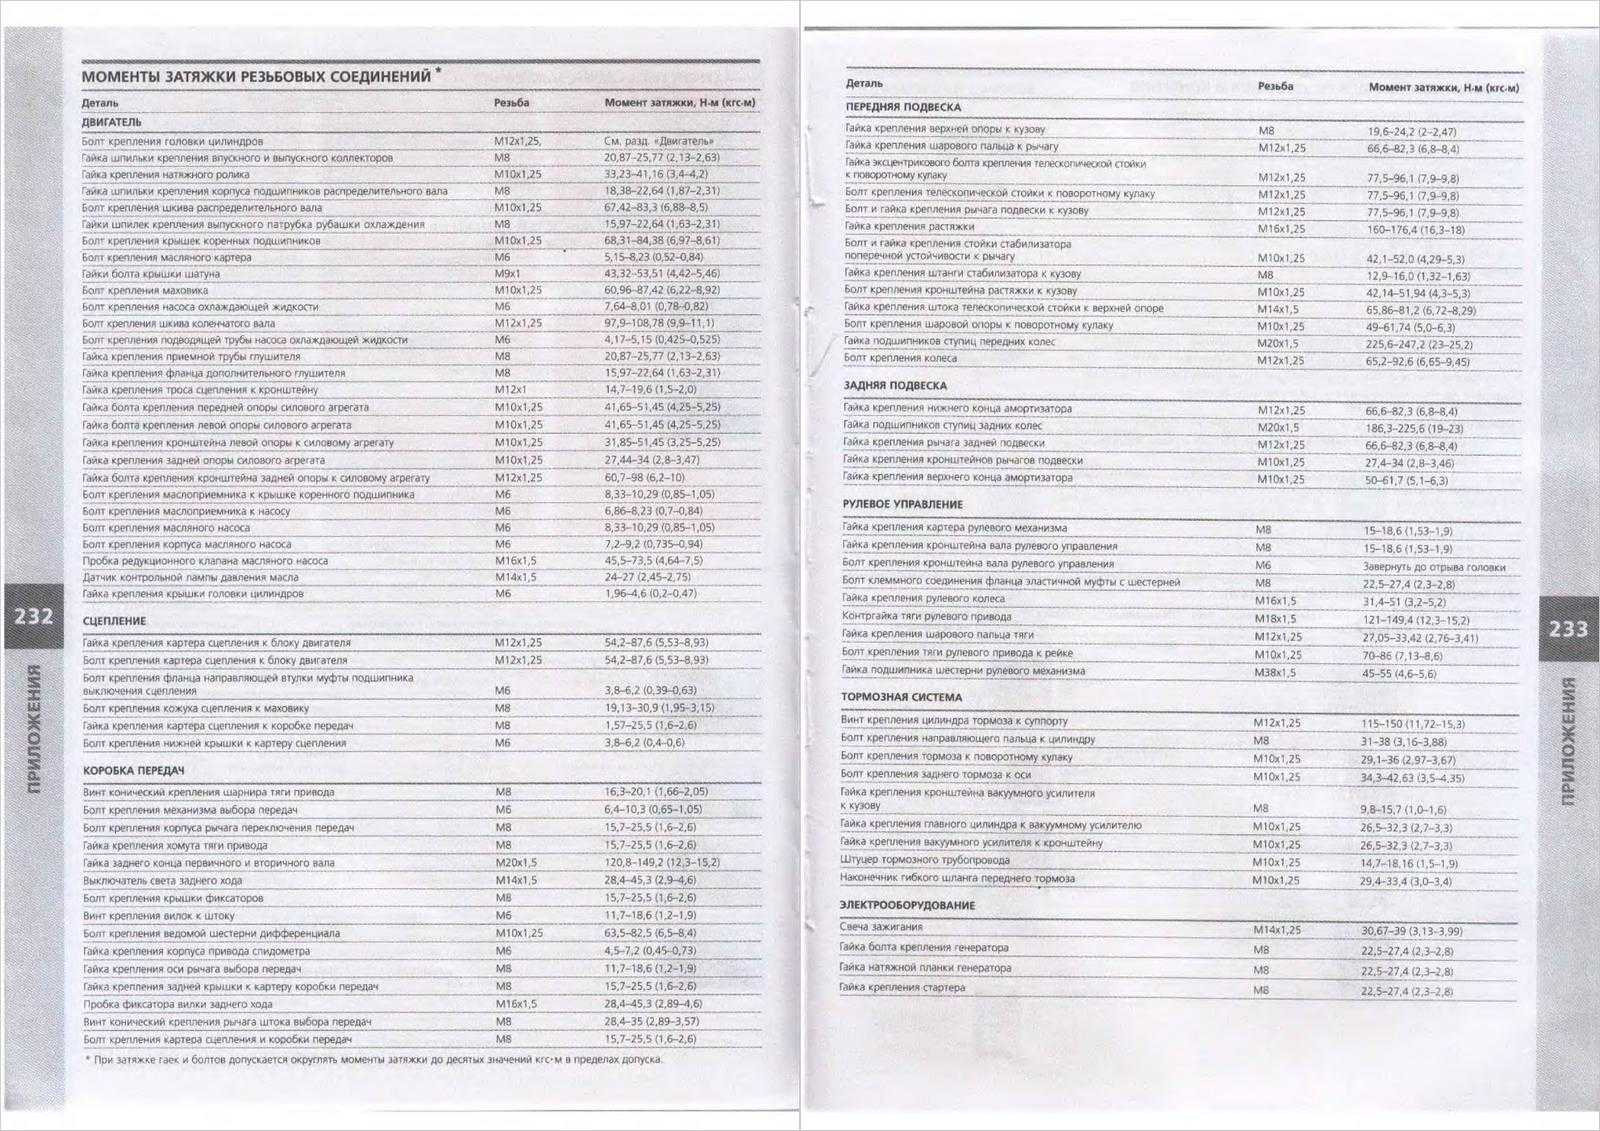 Руководство по ремонту азлк 2141 (москвич) 1986-2000 г.в. 1.2 технические данные и характеристики автомобилей москвич